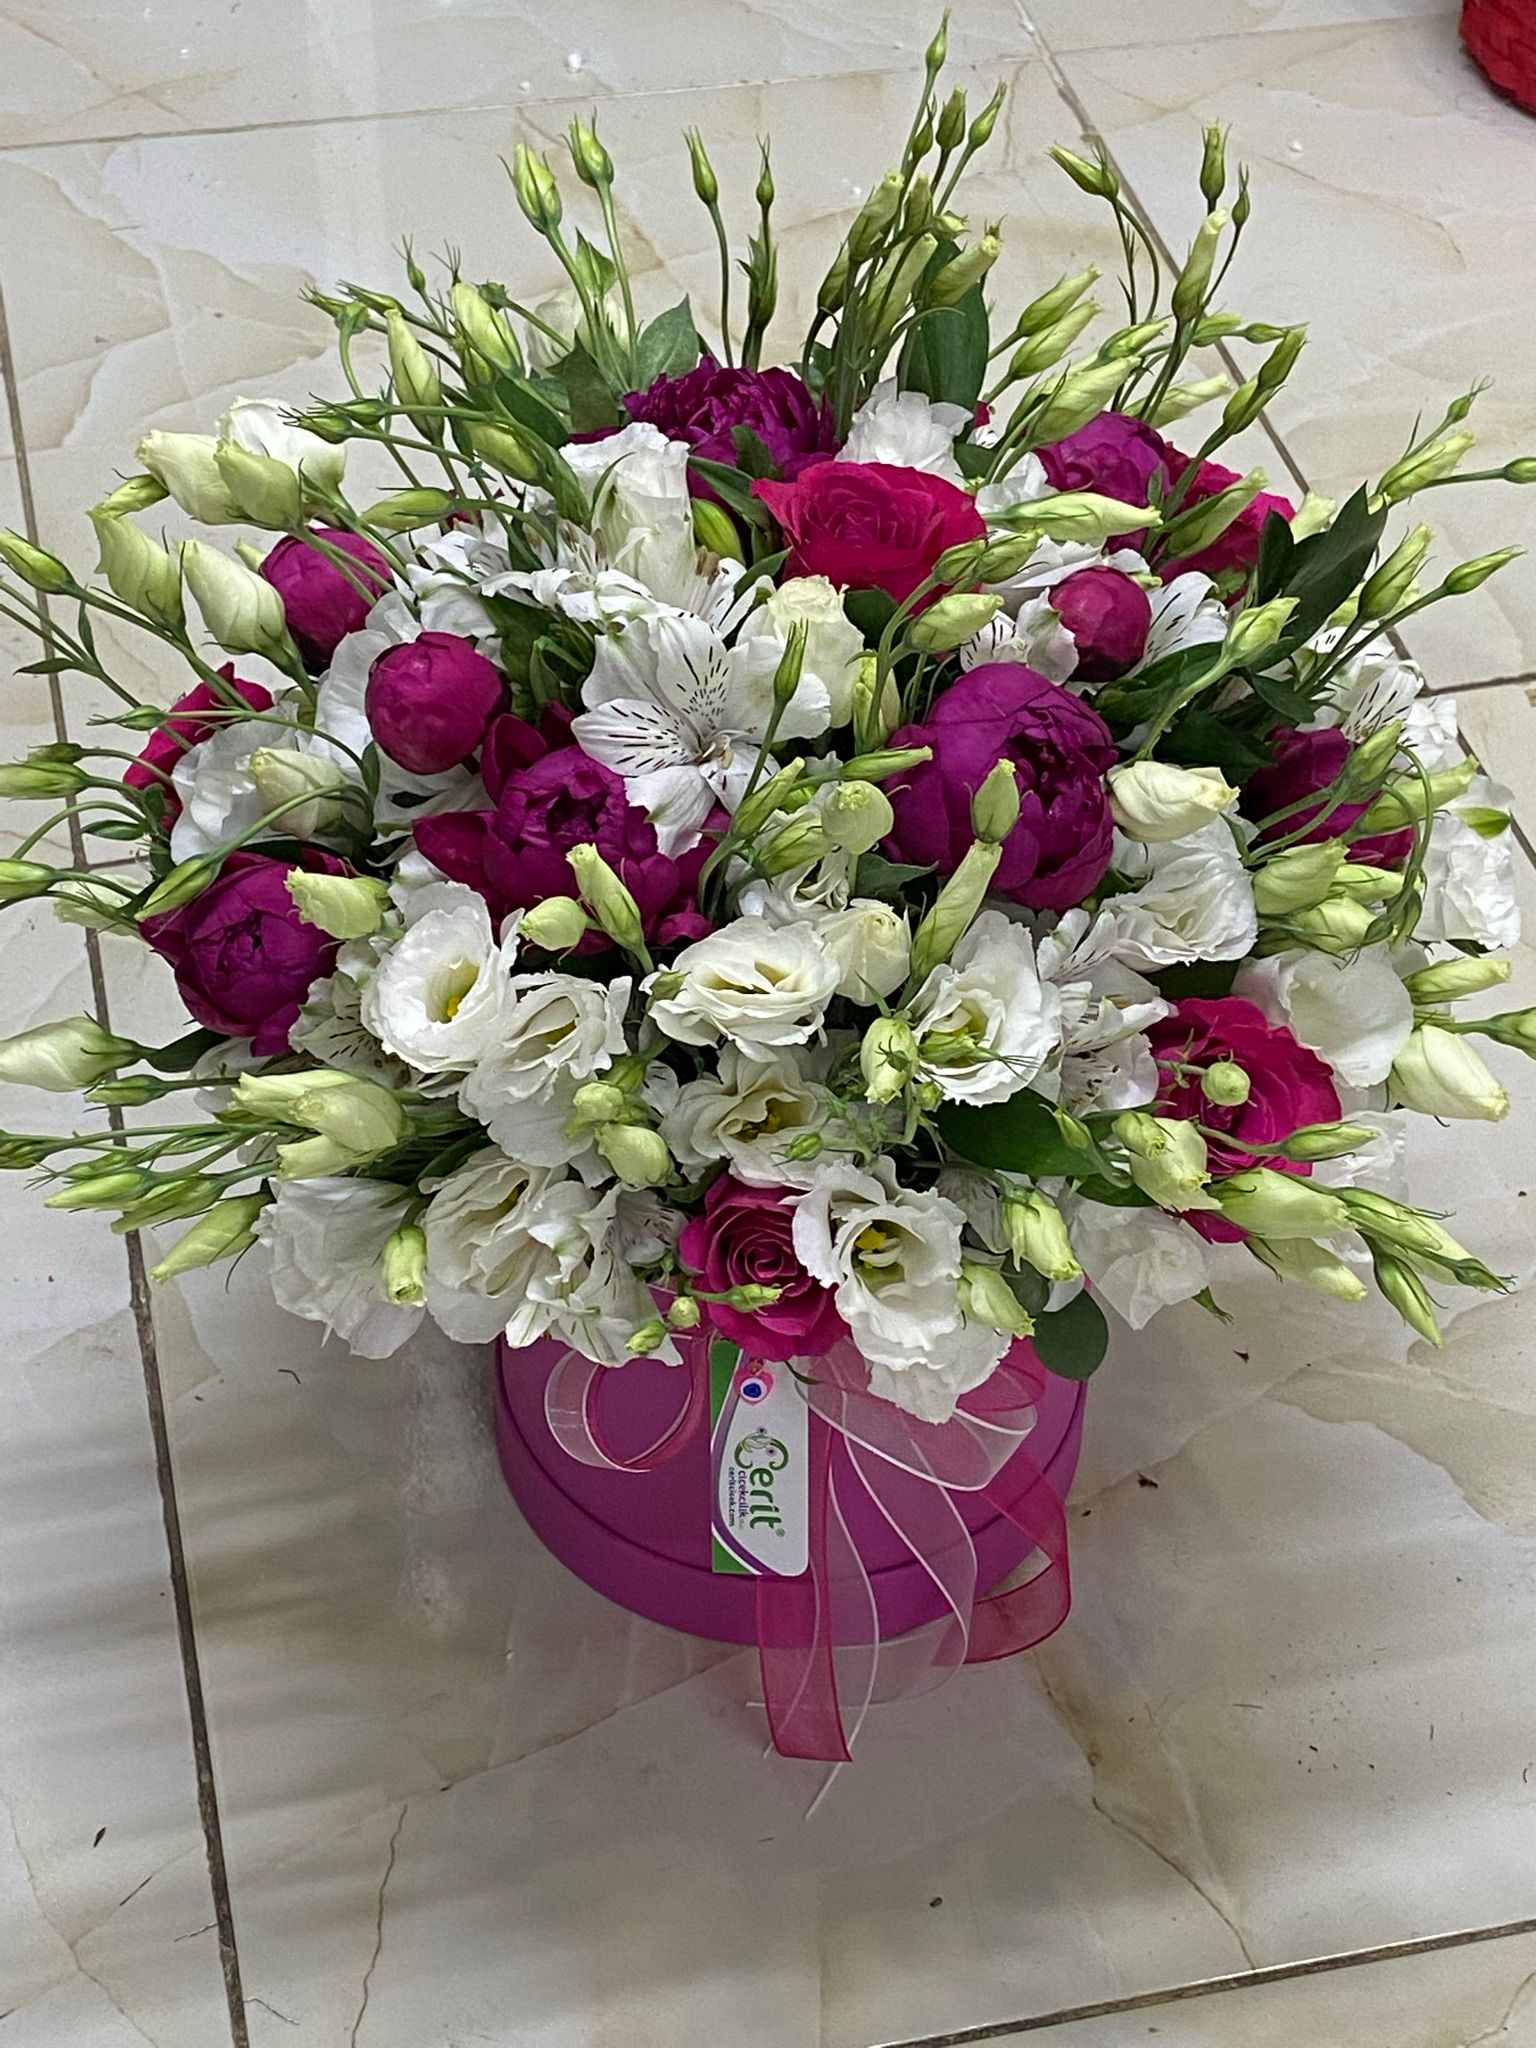  Доставка цветов в Анталия‎  Пион Астомария Лизиантус Роза в коробке